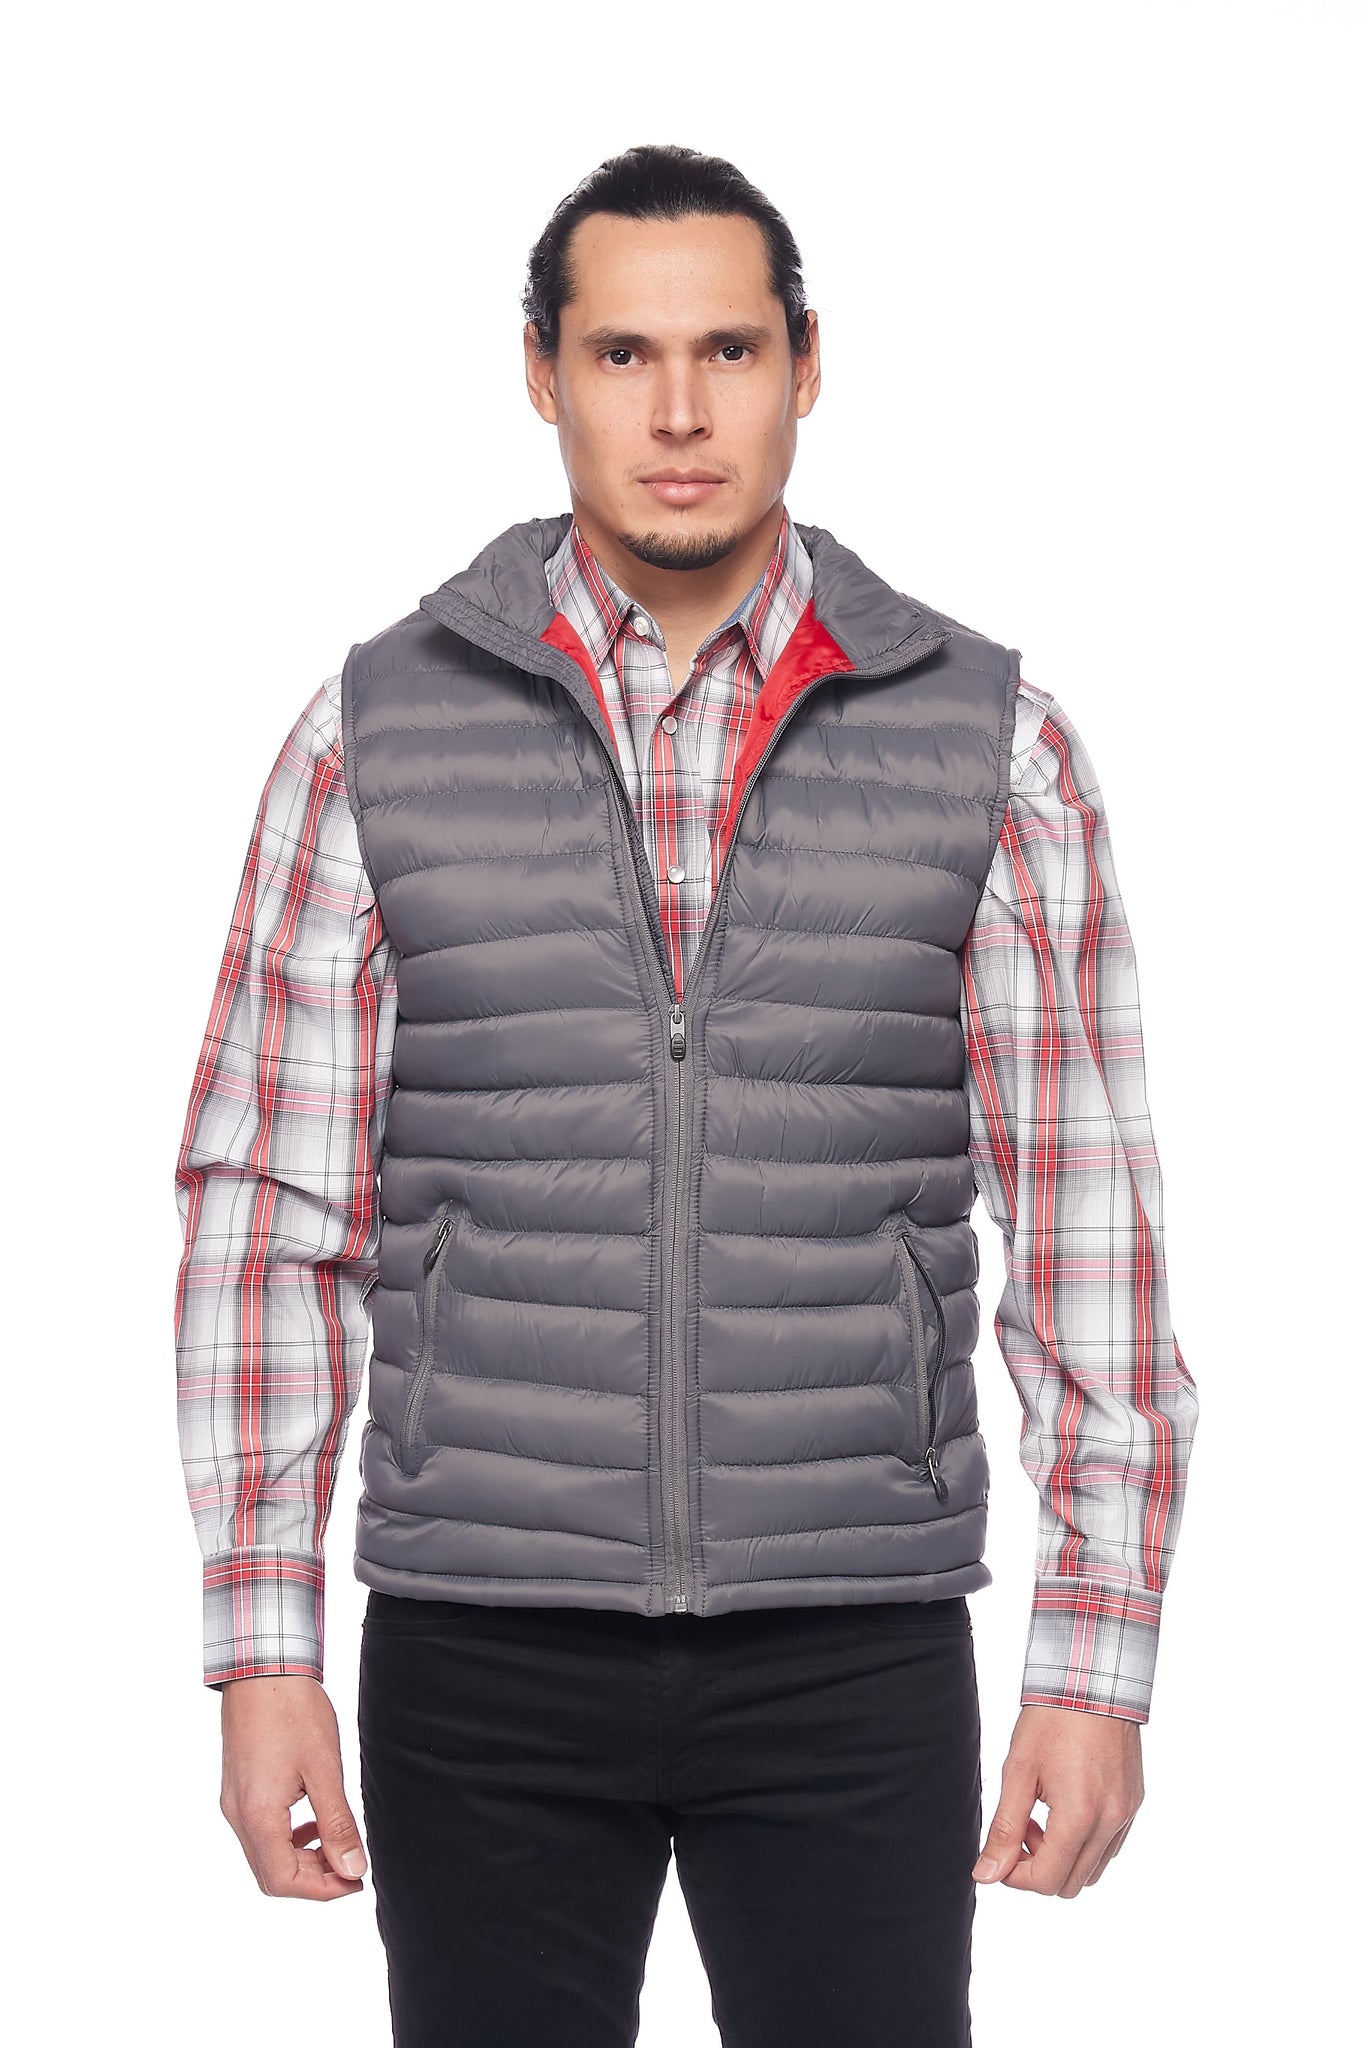 Men's Puffer Workwear/Streetwear Sleeveless Vest-NV640-DK GREY/RED